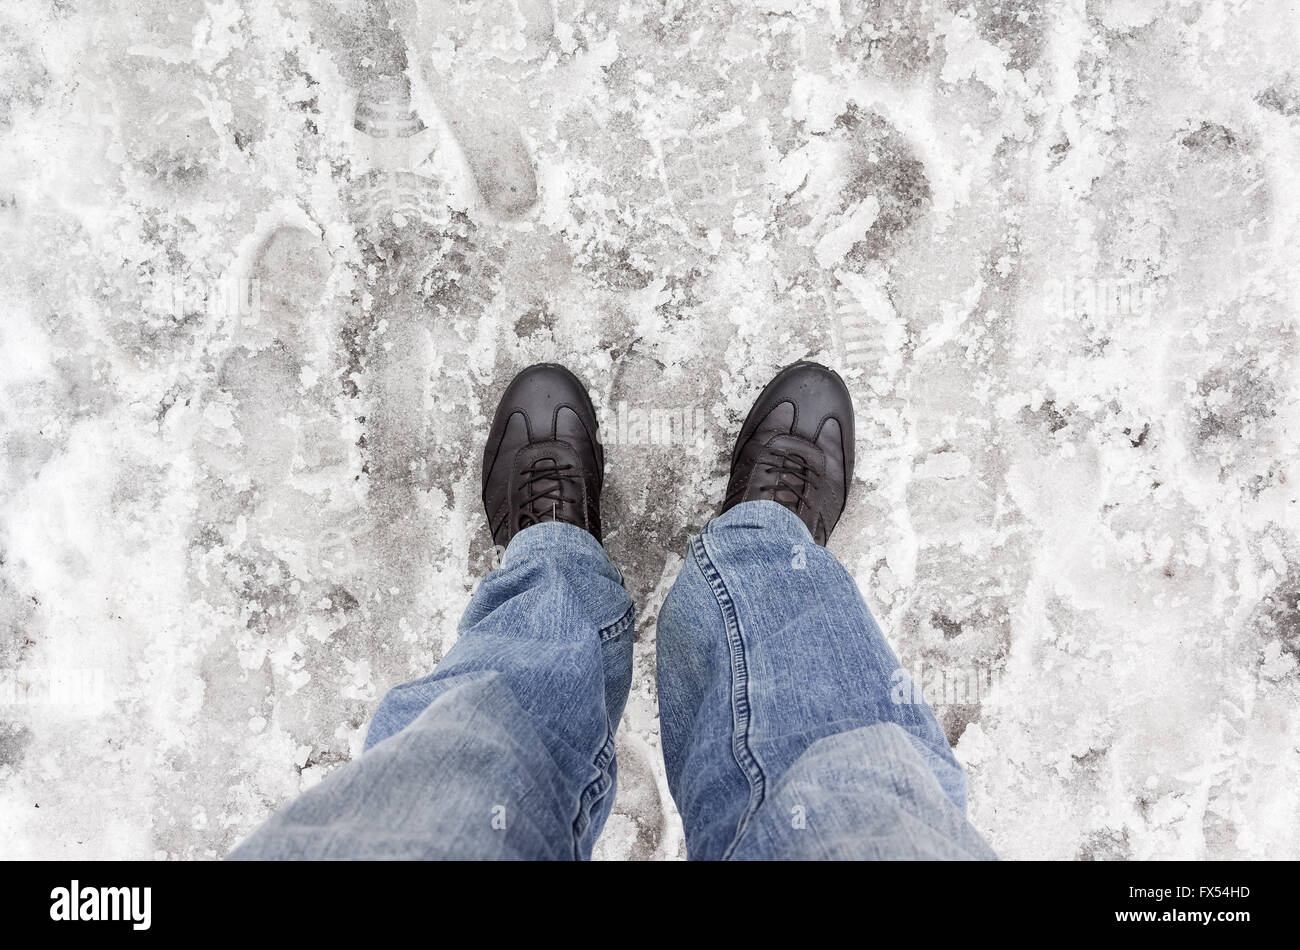 Männliche Füße in Blue Jeans auf nassen schmutzigen Schnee stehen Stockfoto